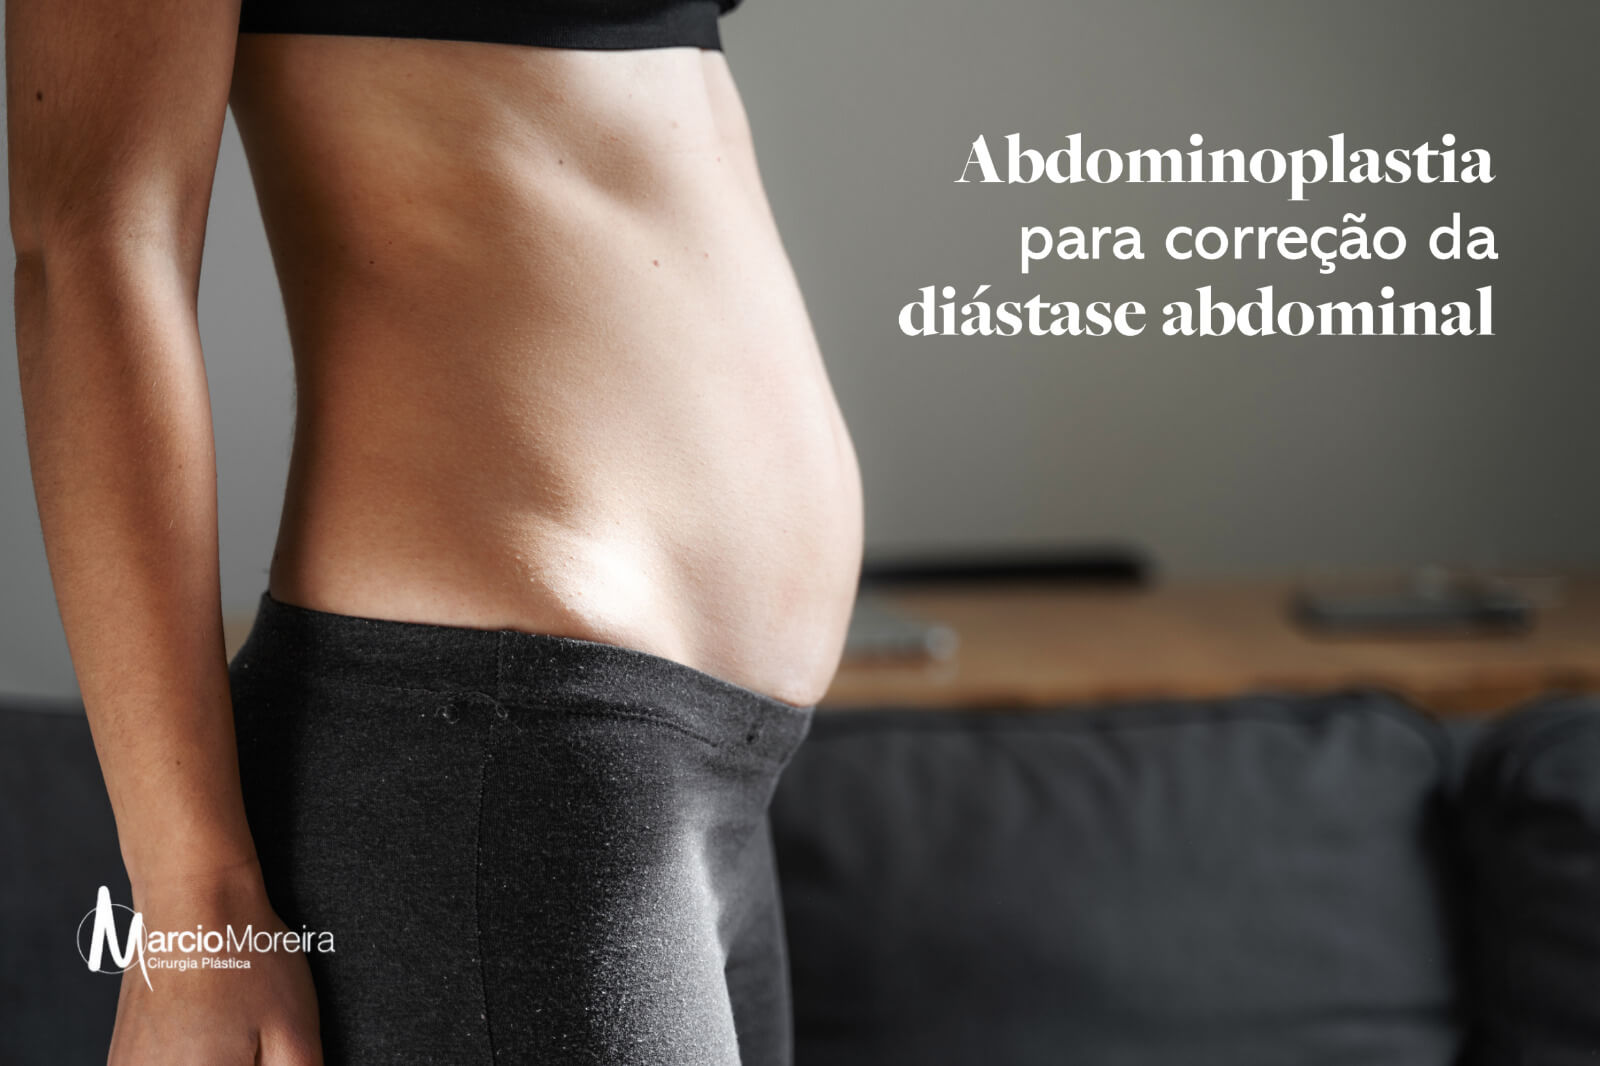 Abdominoplastia para correção da diástase abdominal